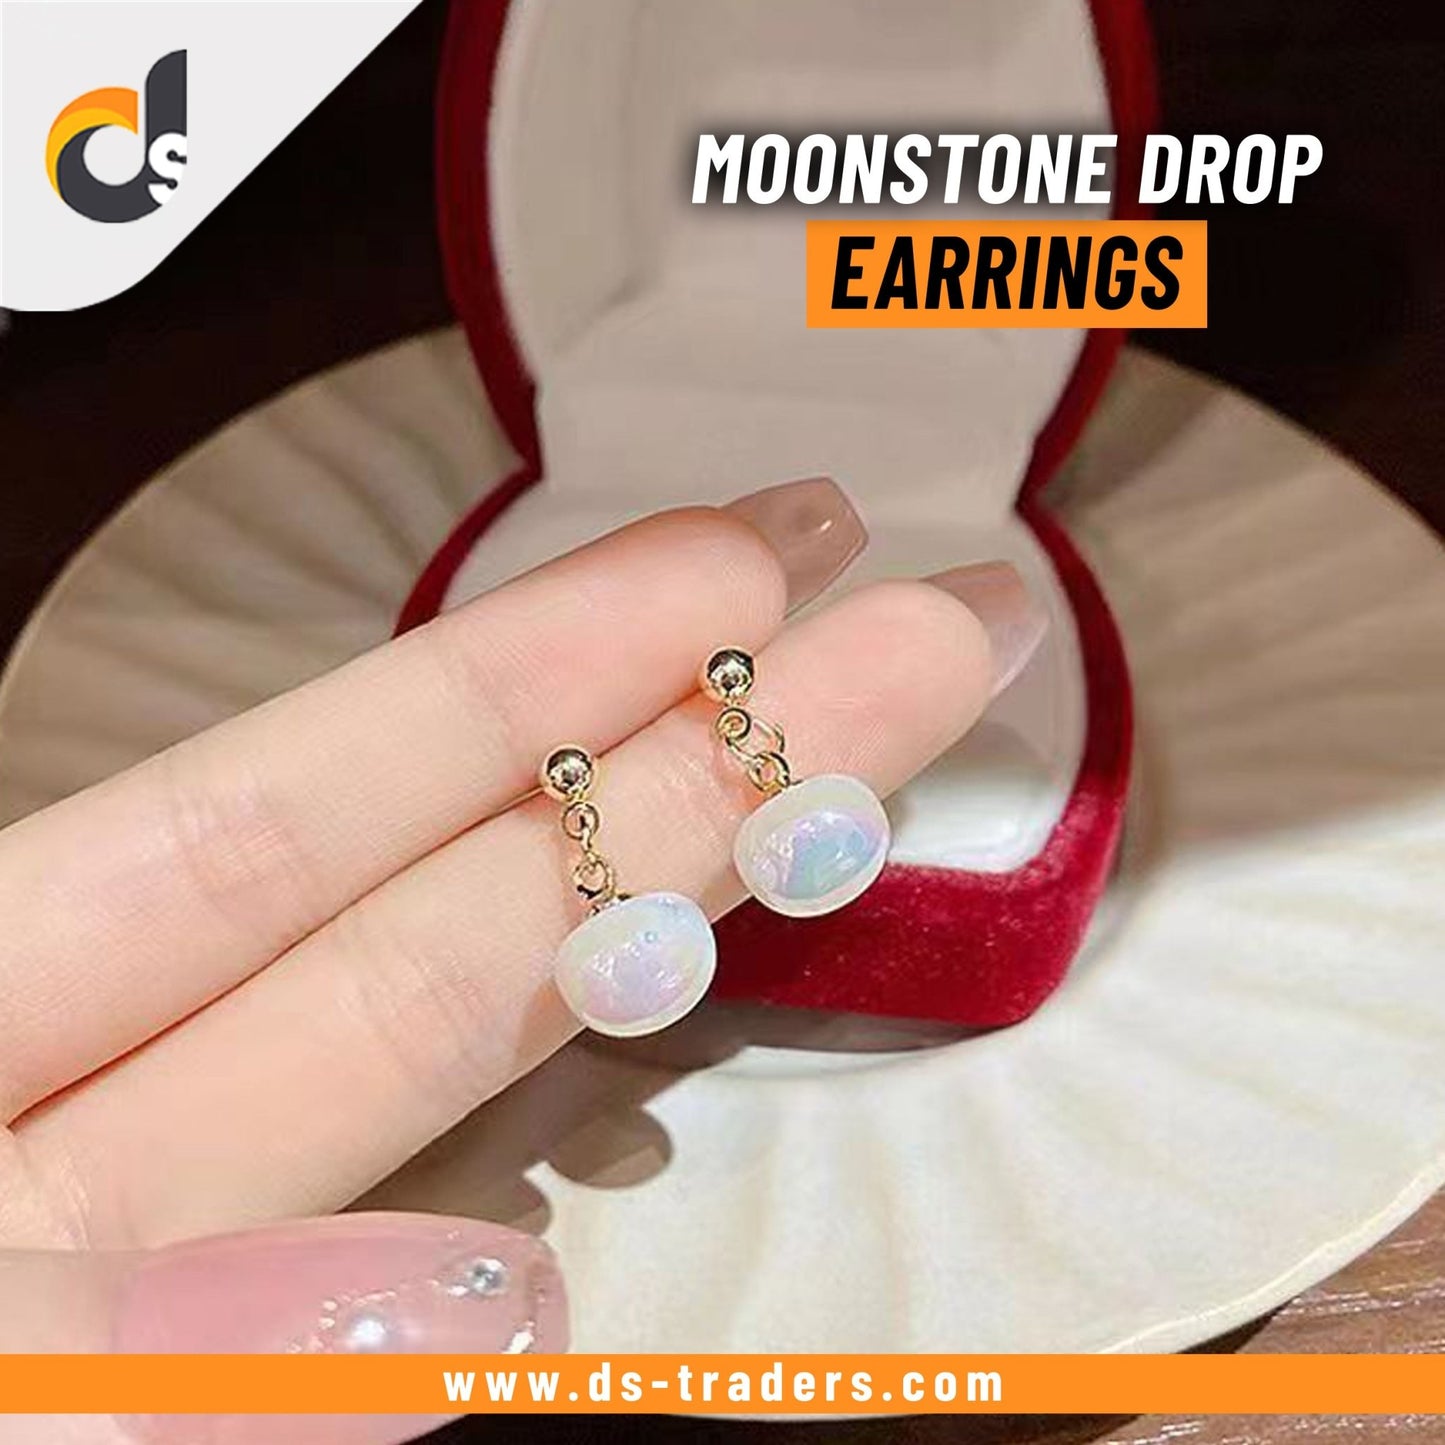 Moonstone Drop Earrings - DS Traders